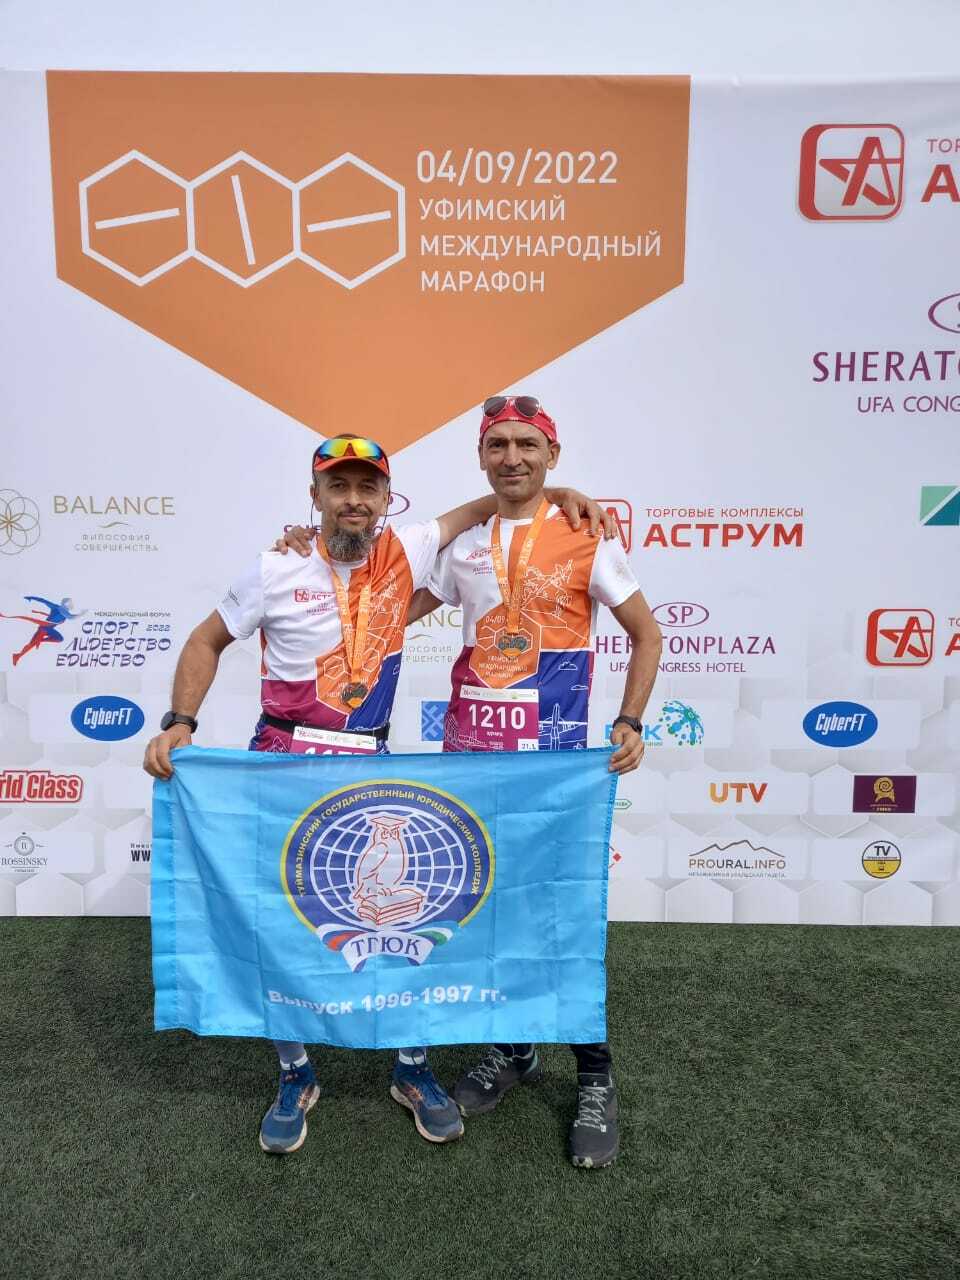 Самоцель Юрия Митрофанова - пробежать 10 марафонов в 2022 году